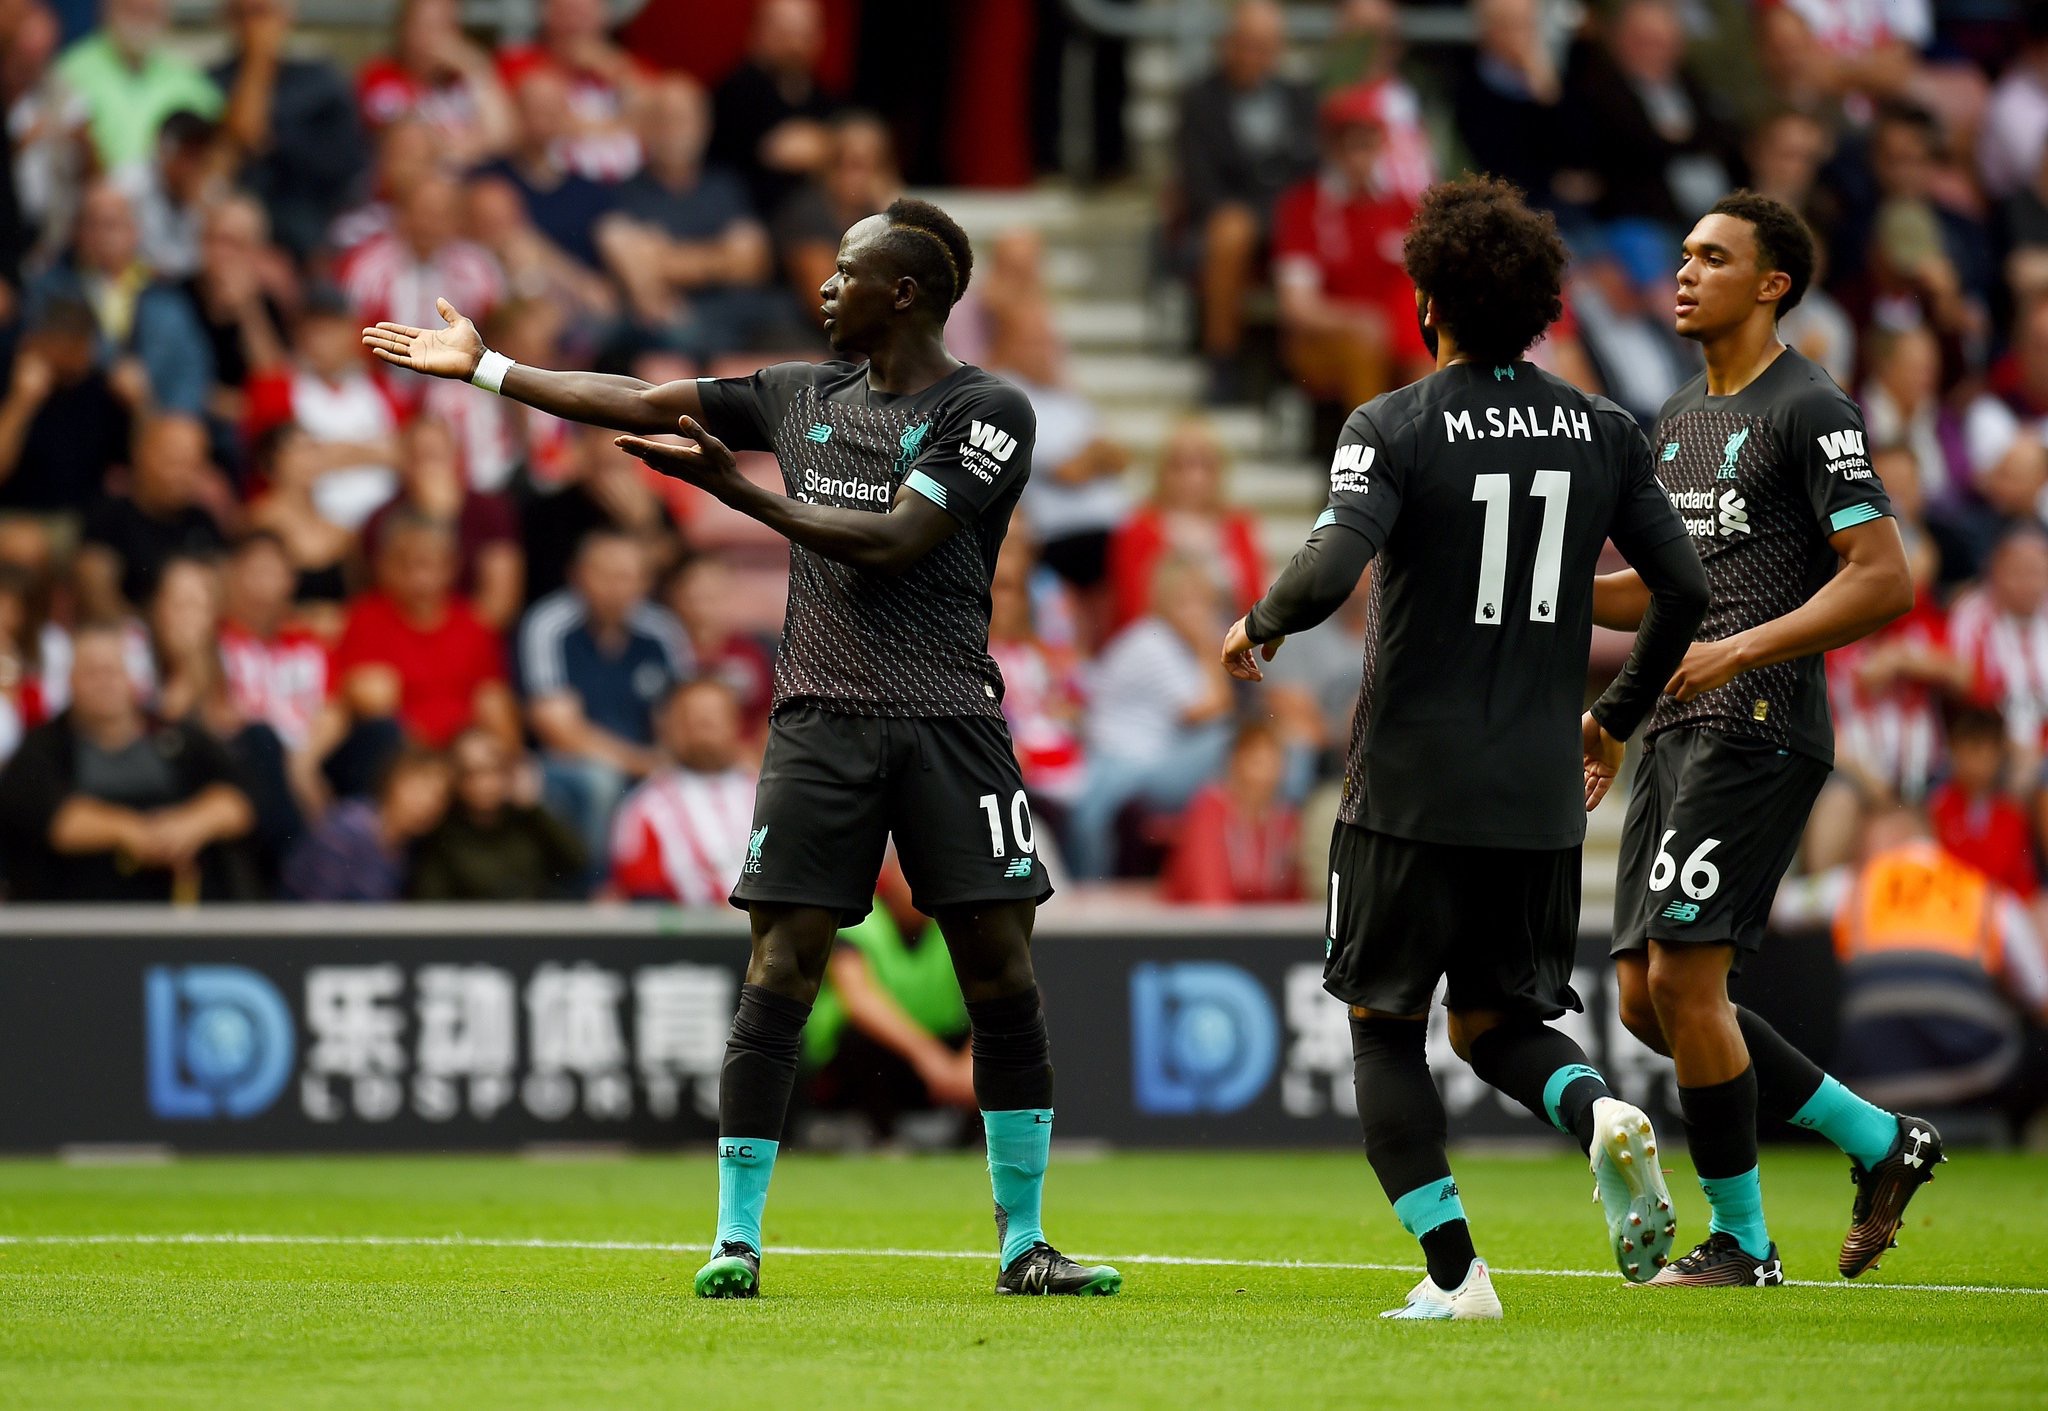 Premier League: Liverpool s’impose à Southampton (1-2)